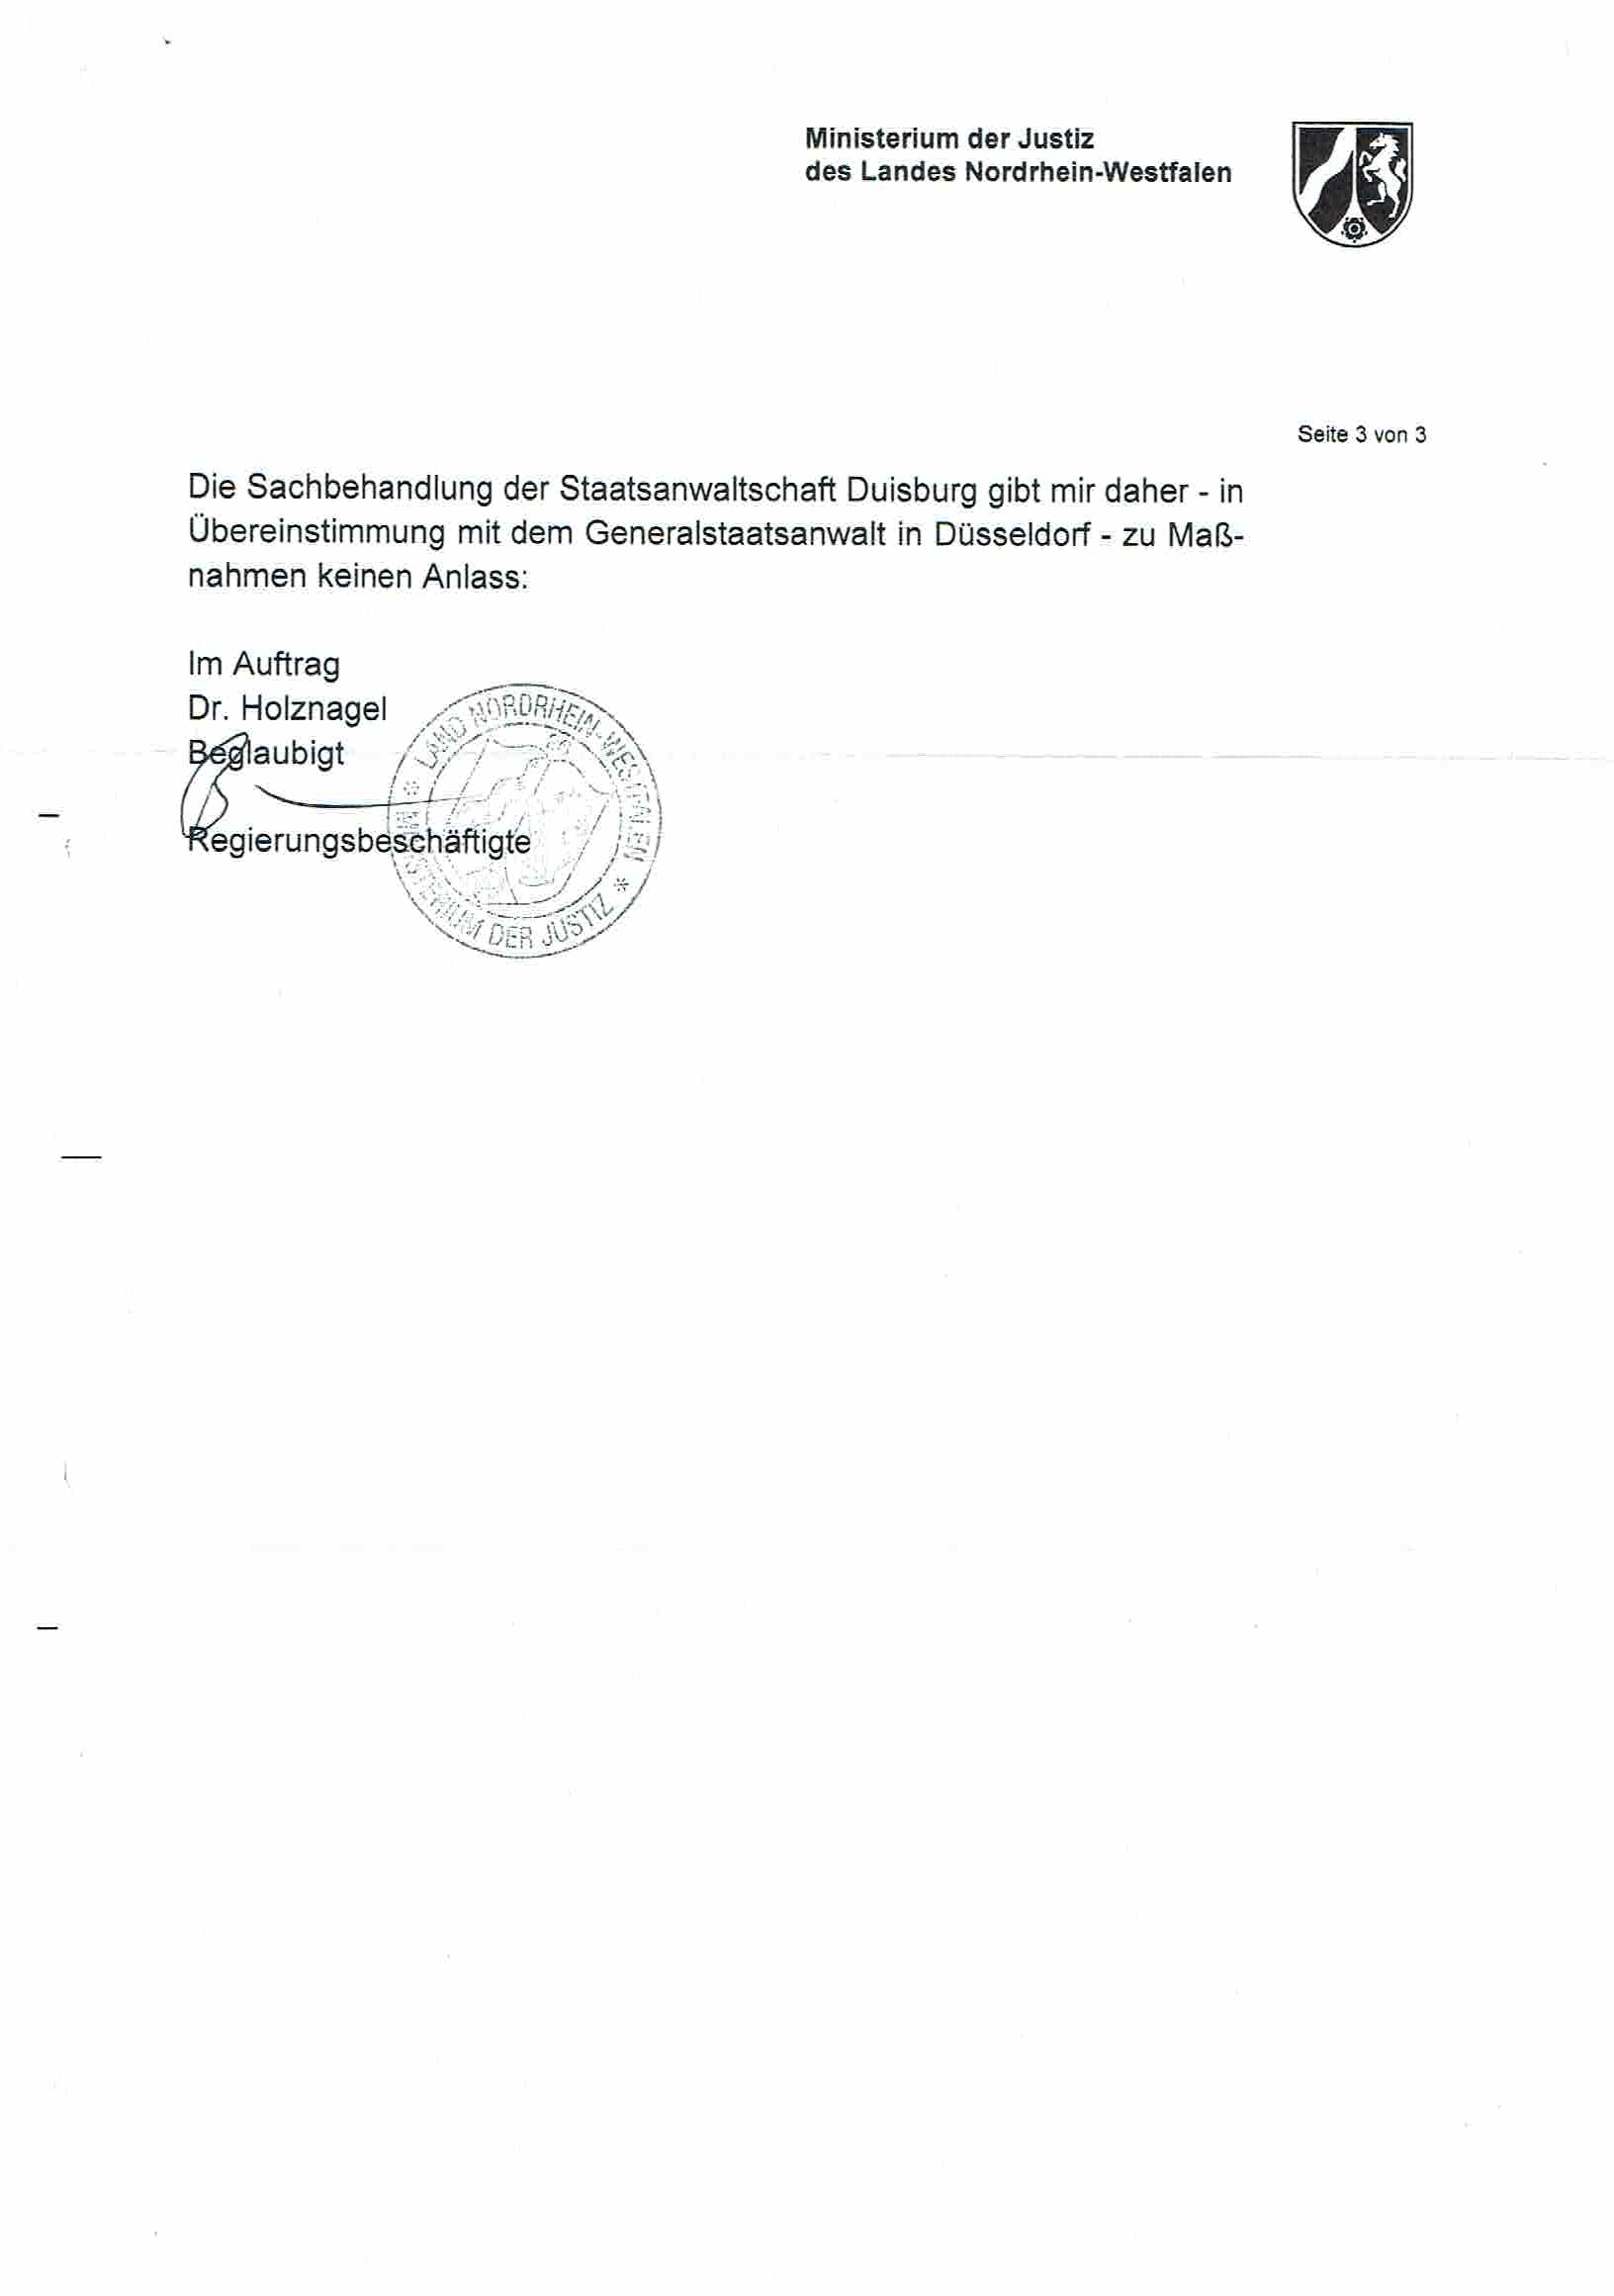 Bescheid der Landesbeauftragen für Datenschutz und Informationsfreiheit Nordrhein-Westfalen vom 18.12.2017, Anlage S. 1